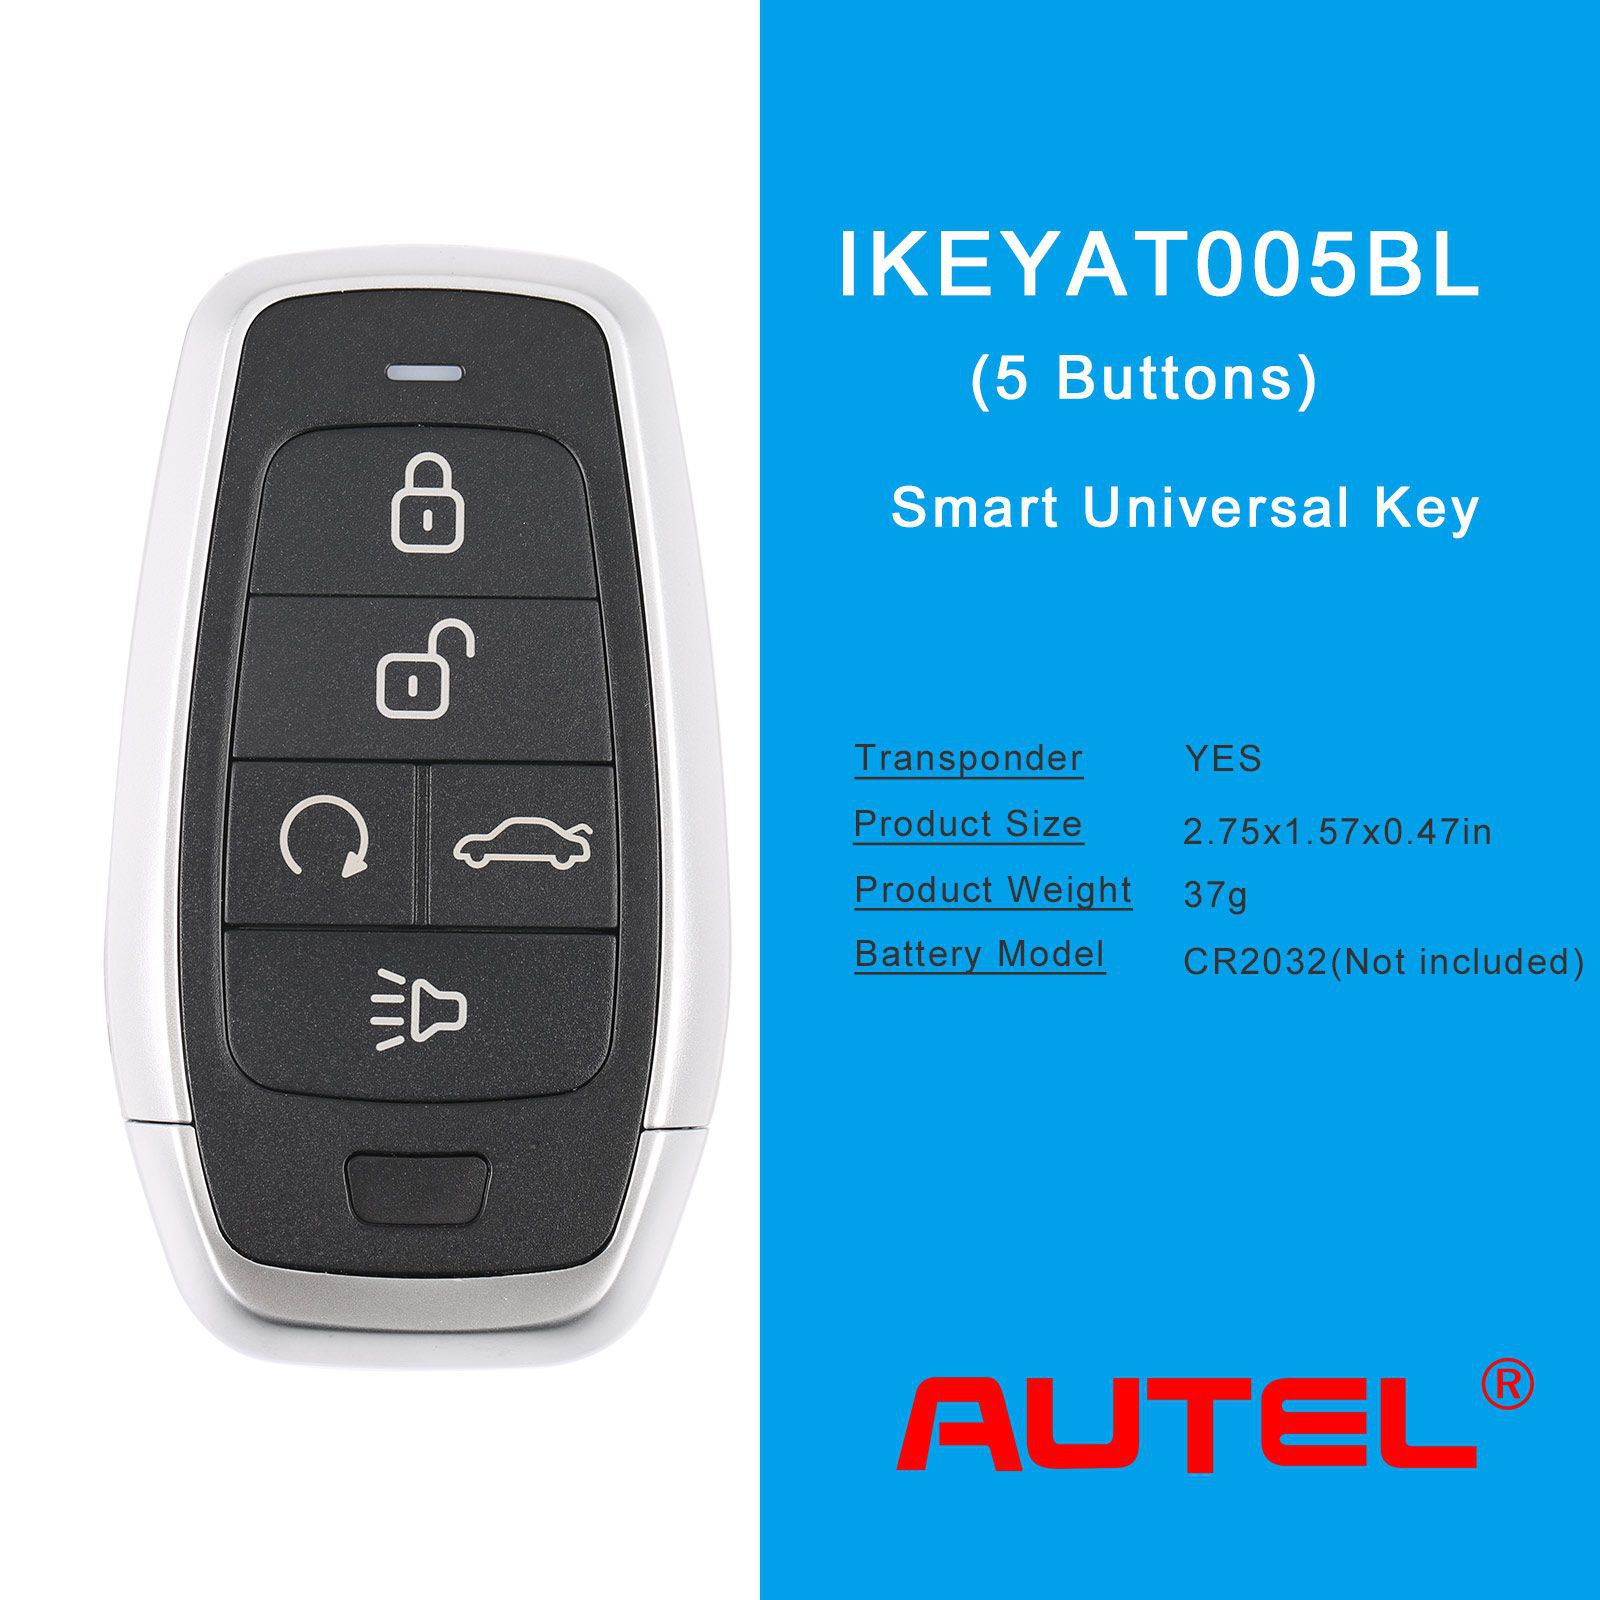 Autel ikeyat005bl 5 boutons clés intelligentes universelles indépendantes 5pcs / lot